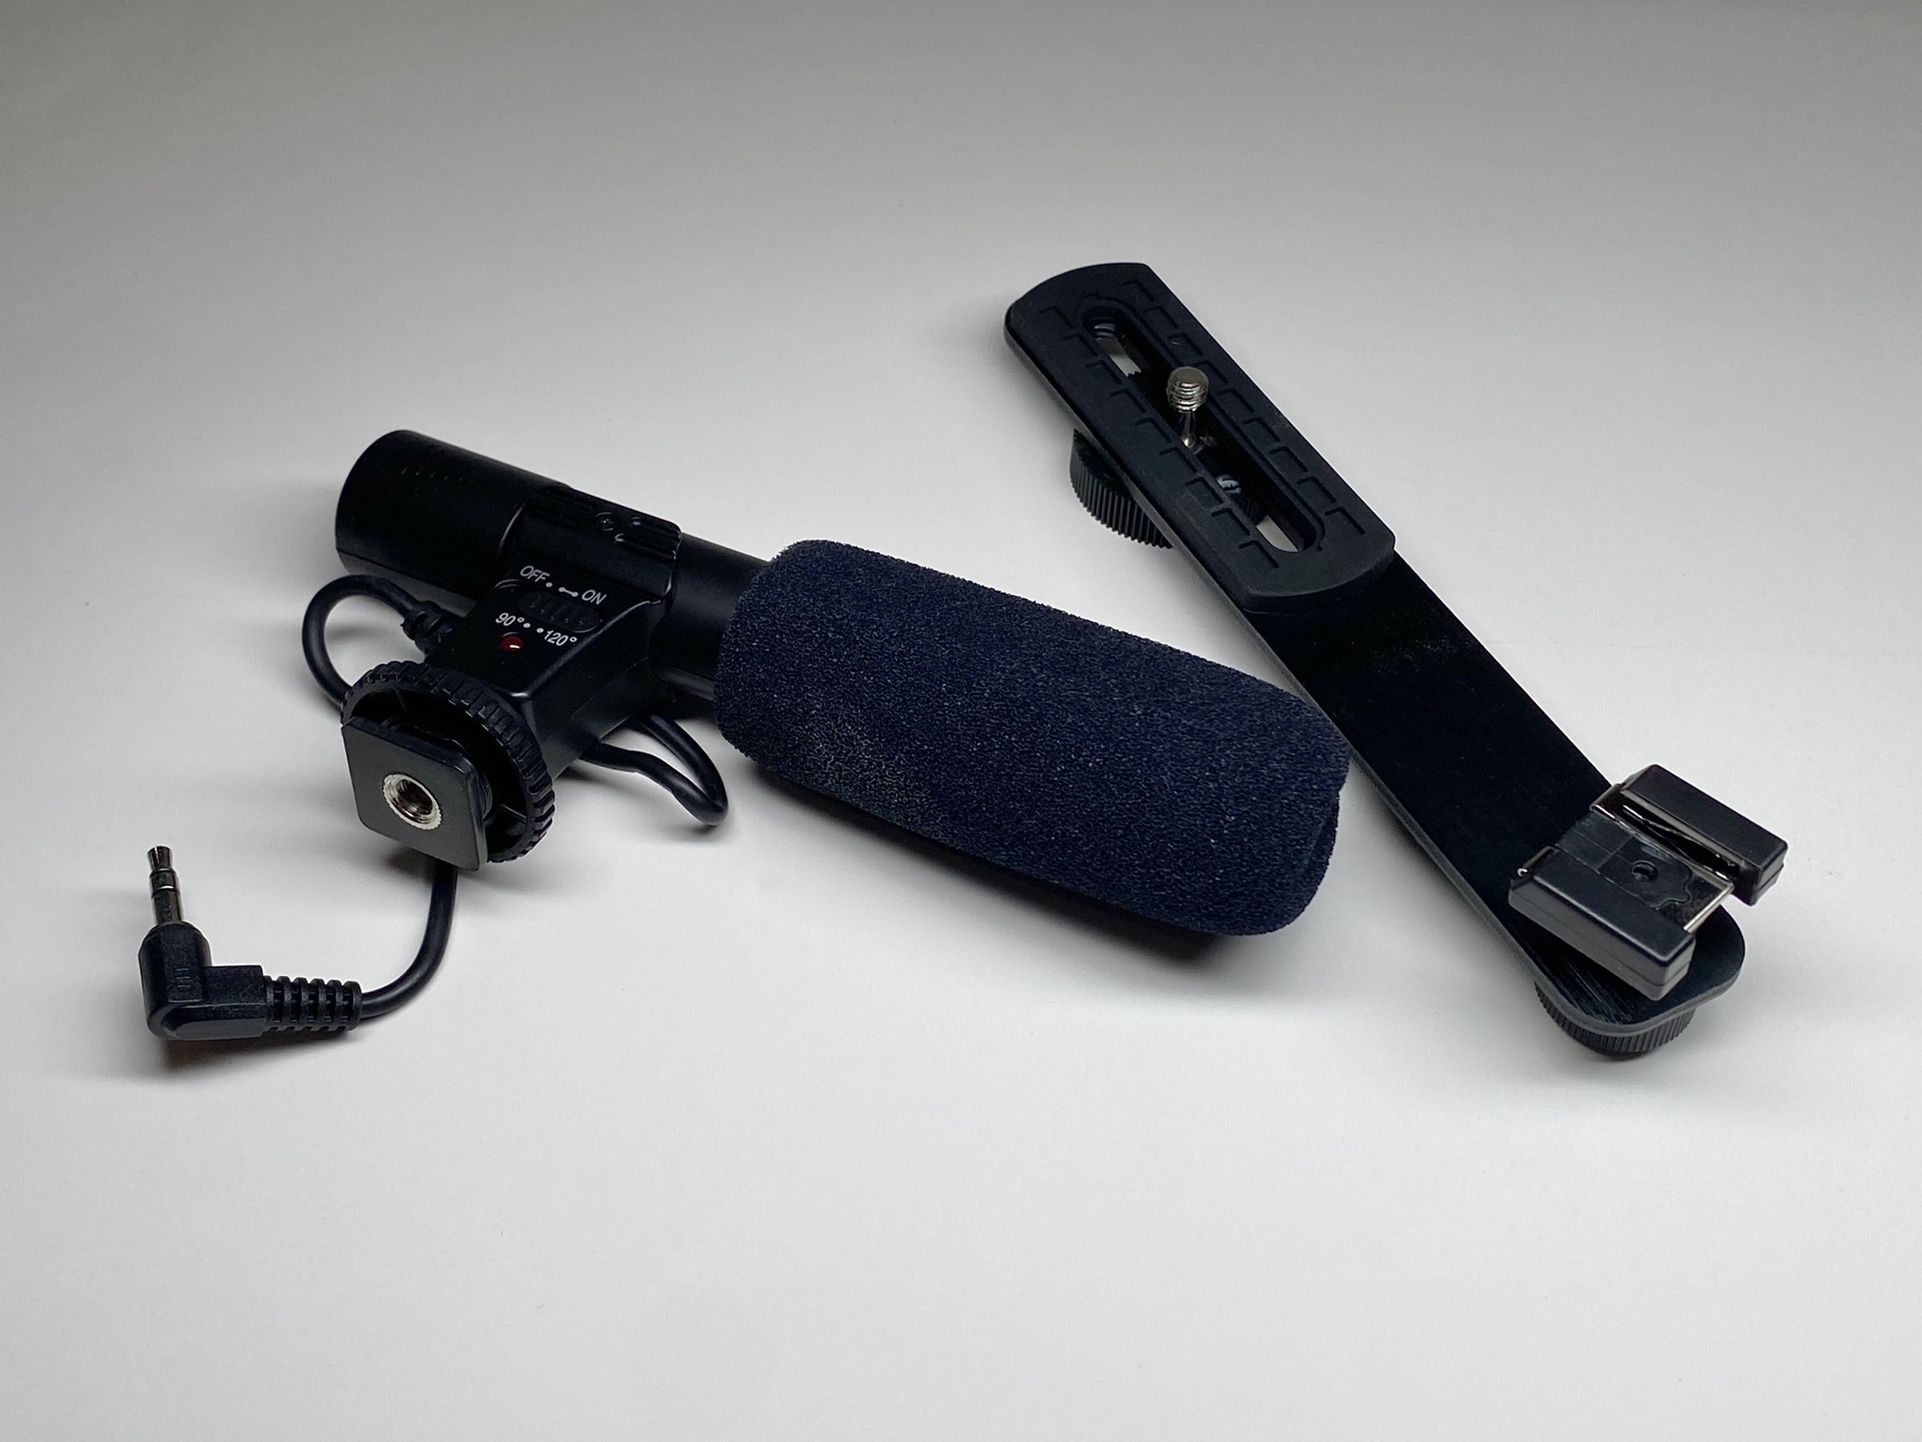 Shotgun Mic For DSLR/SLR Cameras